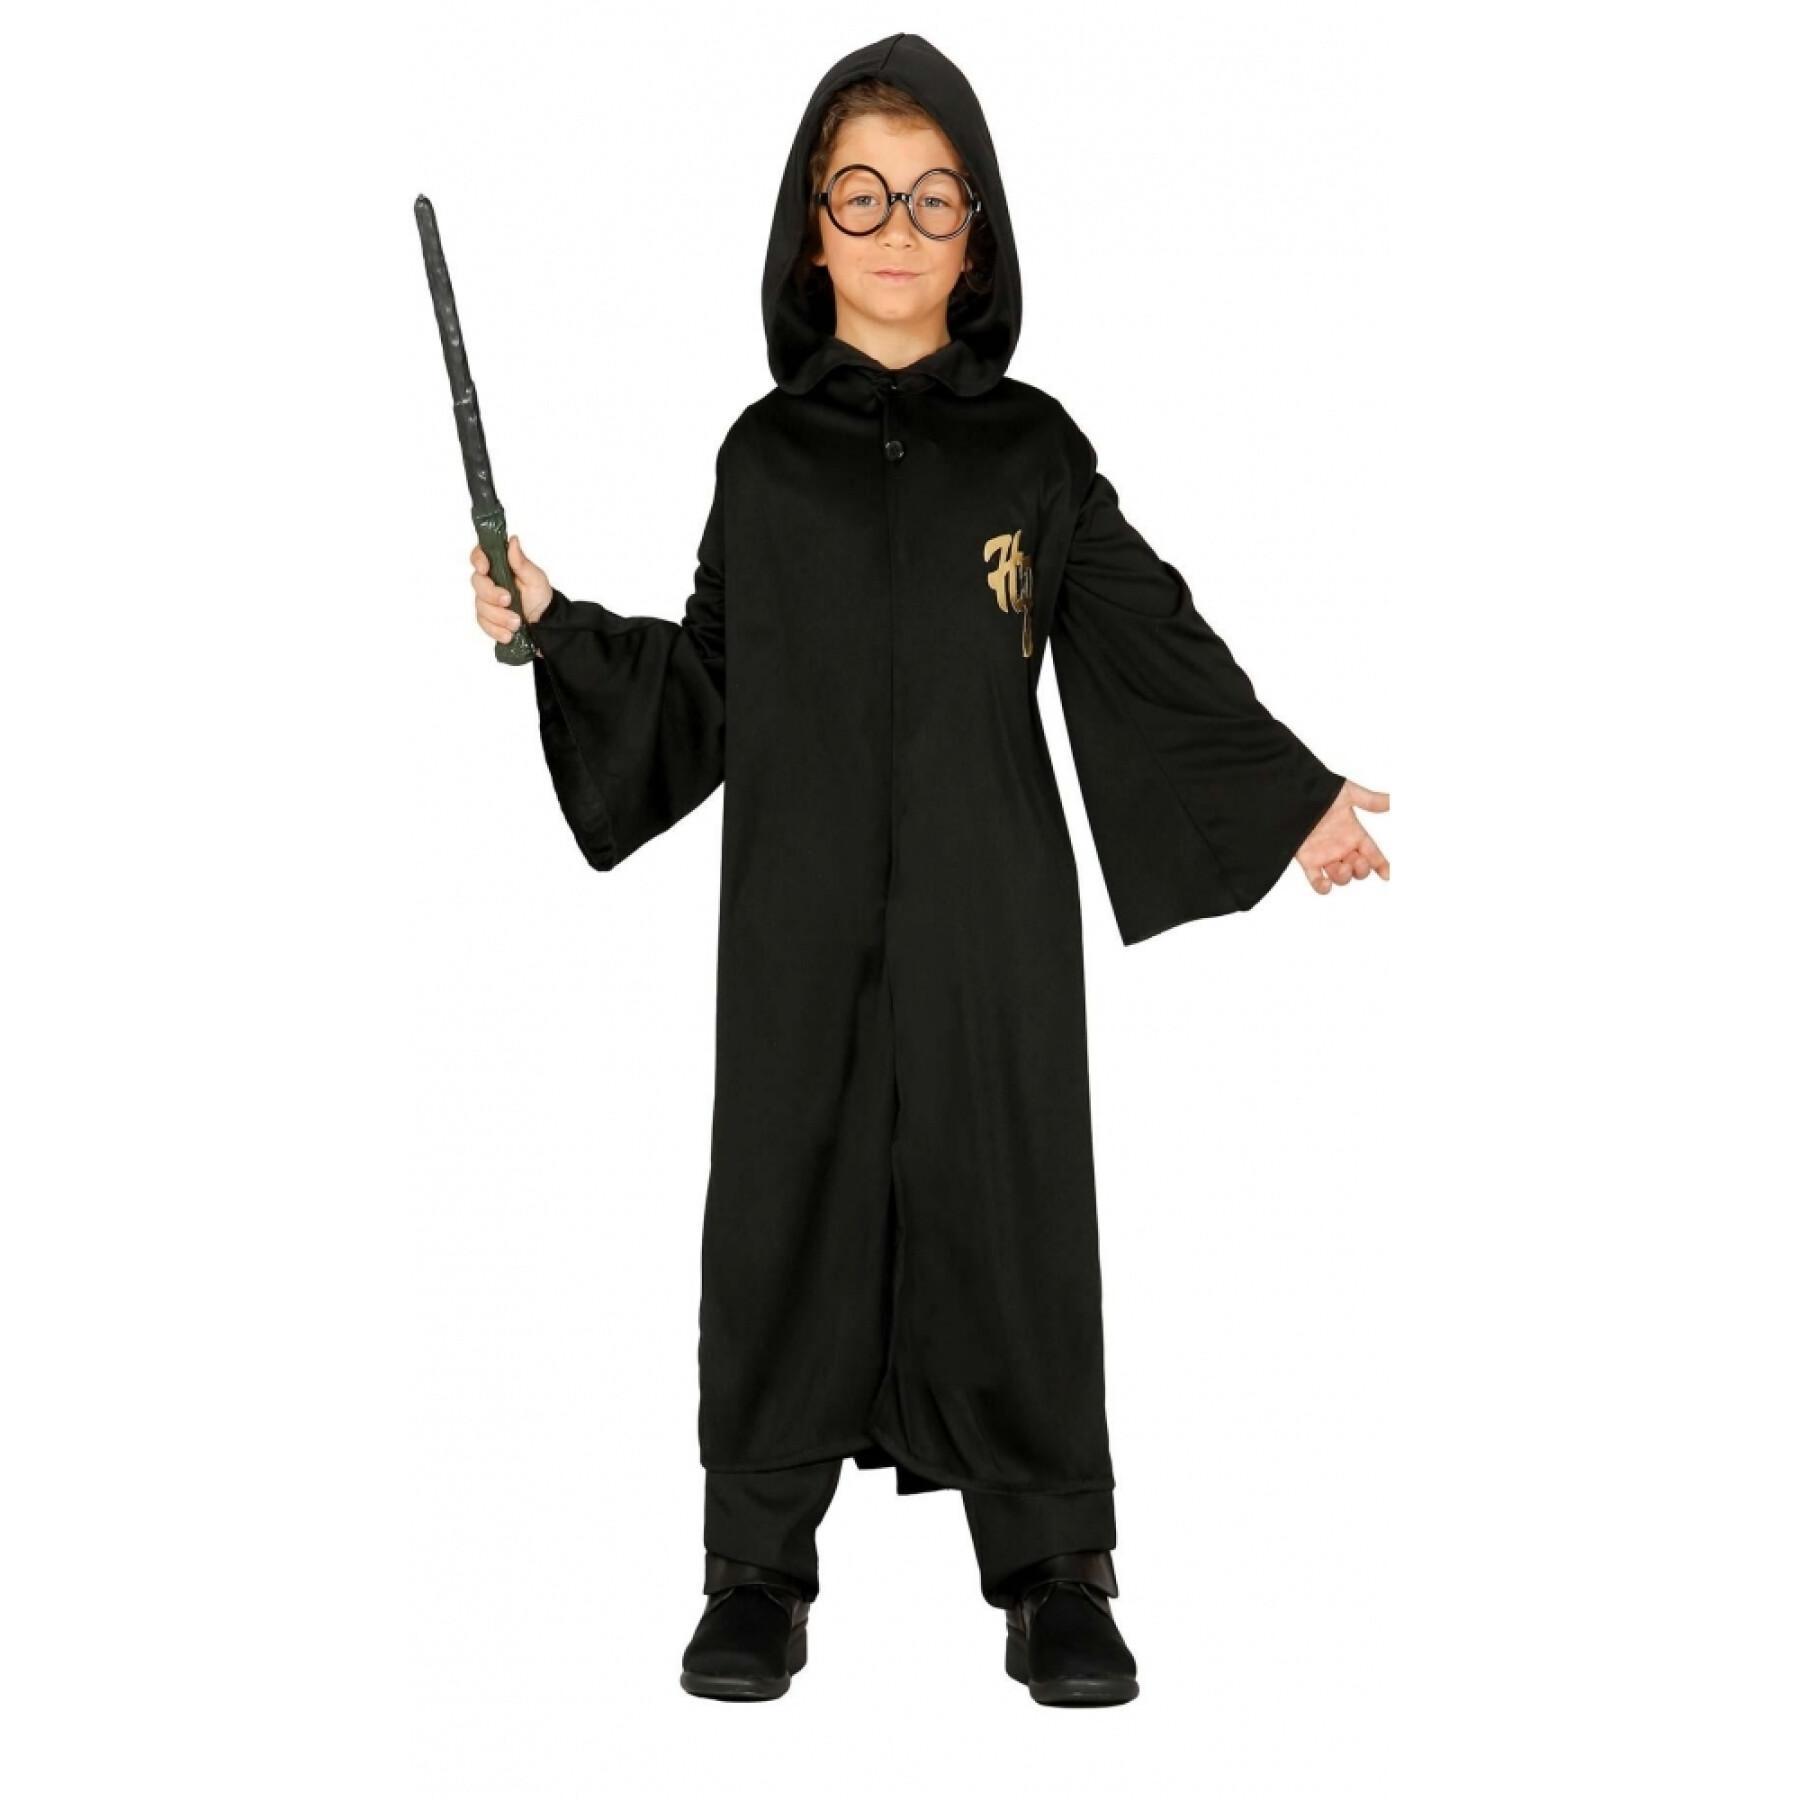 Förklädnad till magikerns lärling Harry Potter